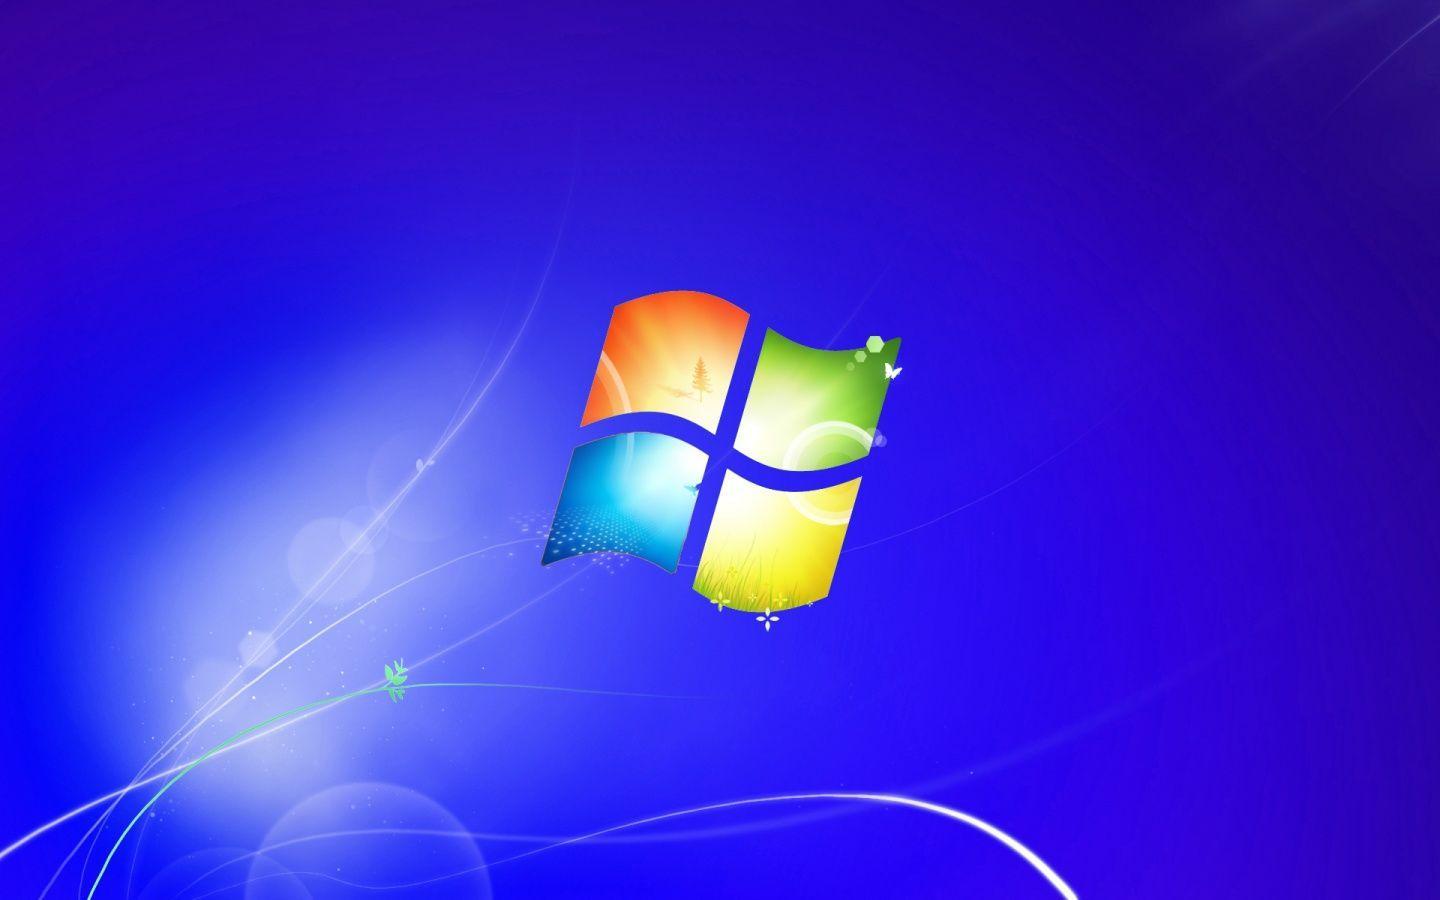 Cây xương rồng xanh cùng với Windows 7 là sự kết hợp tuyệt vời cho hình nền HD. Chiếc rể dài, mảnh mai của nó sẽ làm cho màn hình máy tính của bạn trở nên bắt mắt và độc đáo hơn.